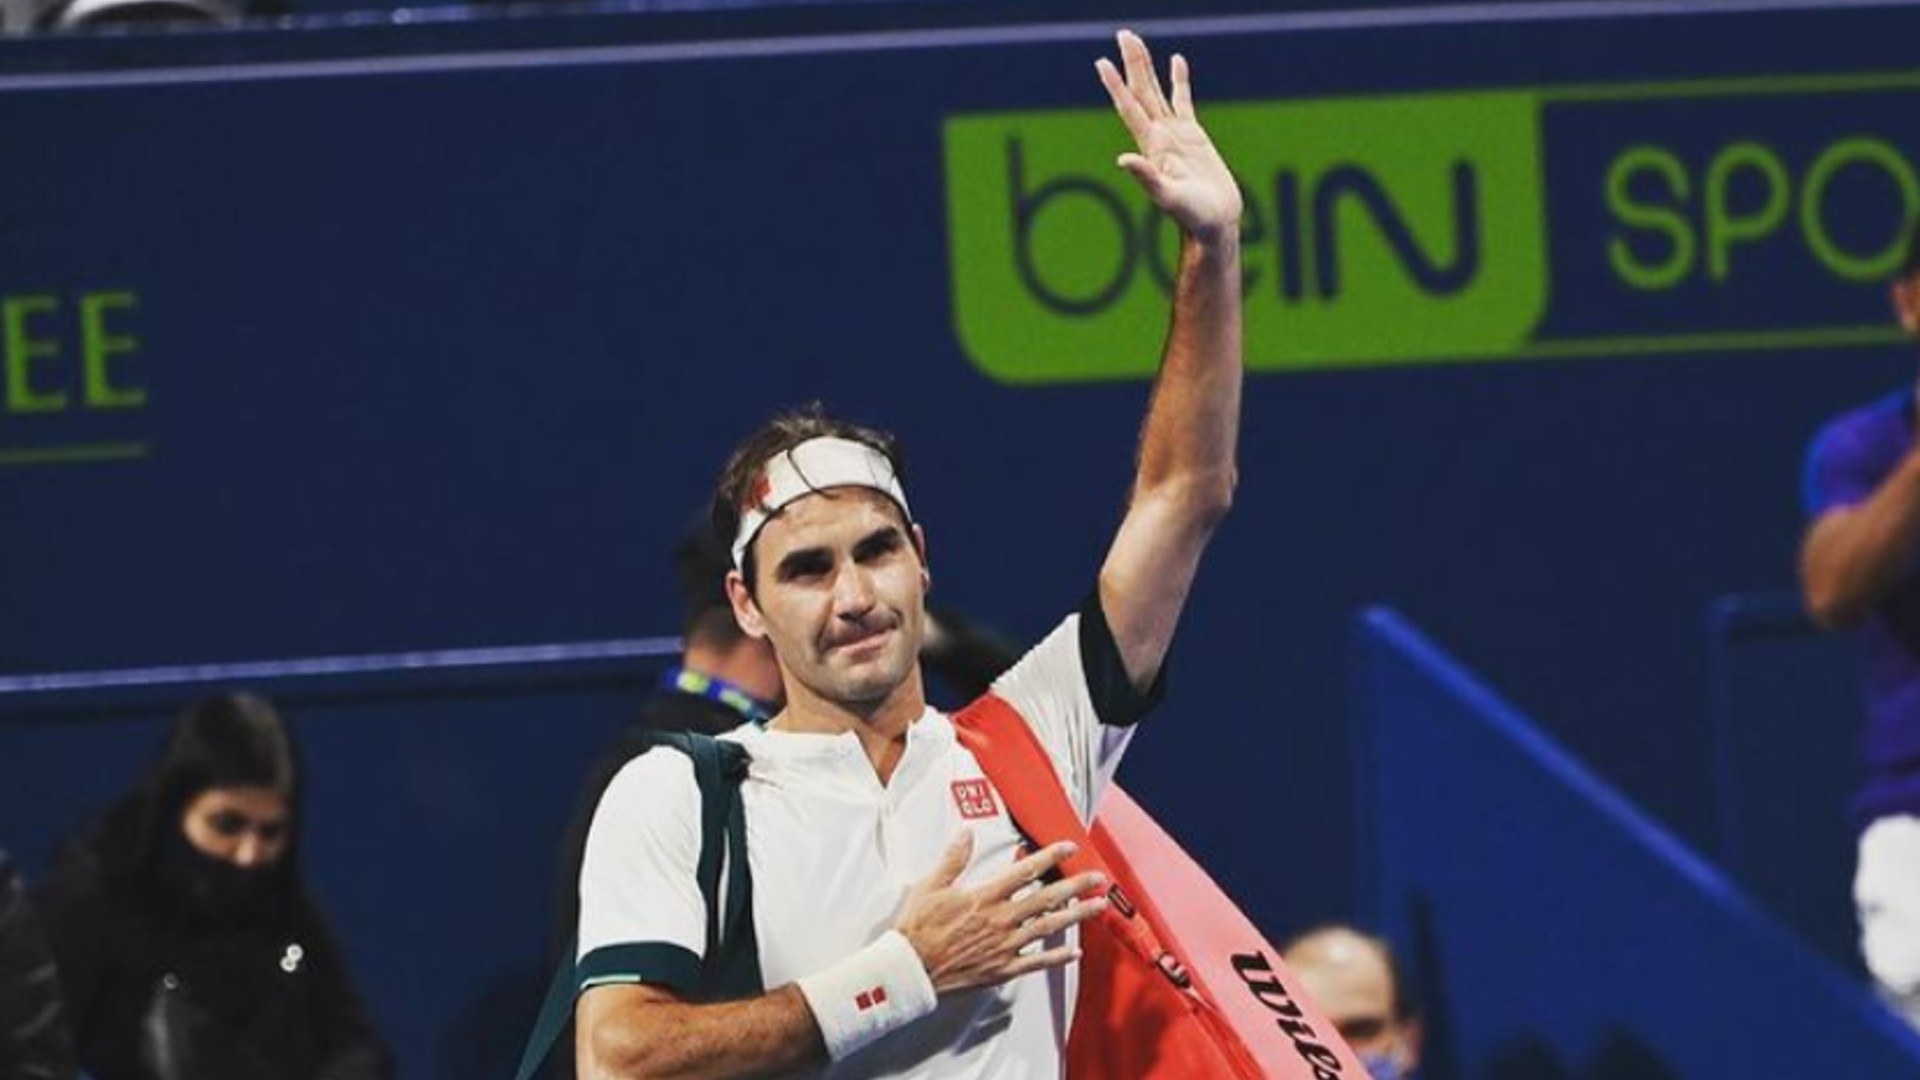 Roger Federer in Doha; Credit: Roger Federer Instagram page